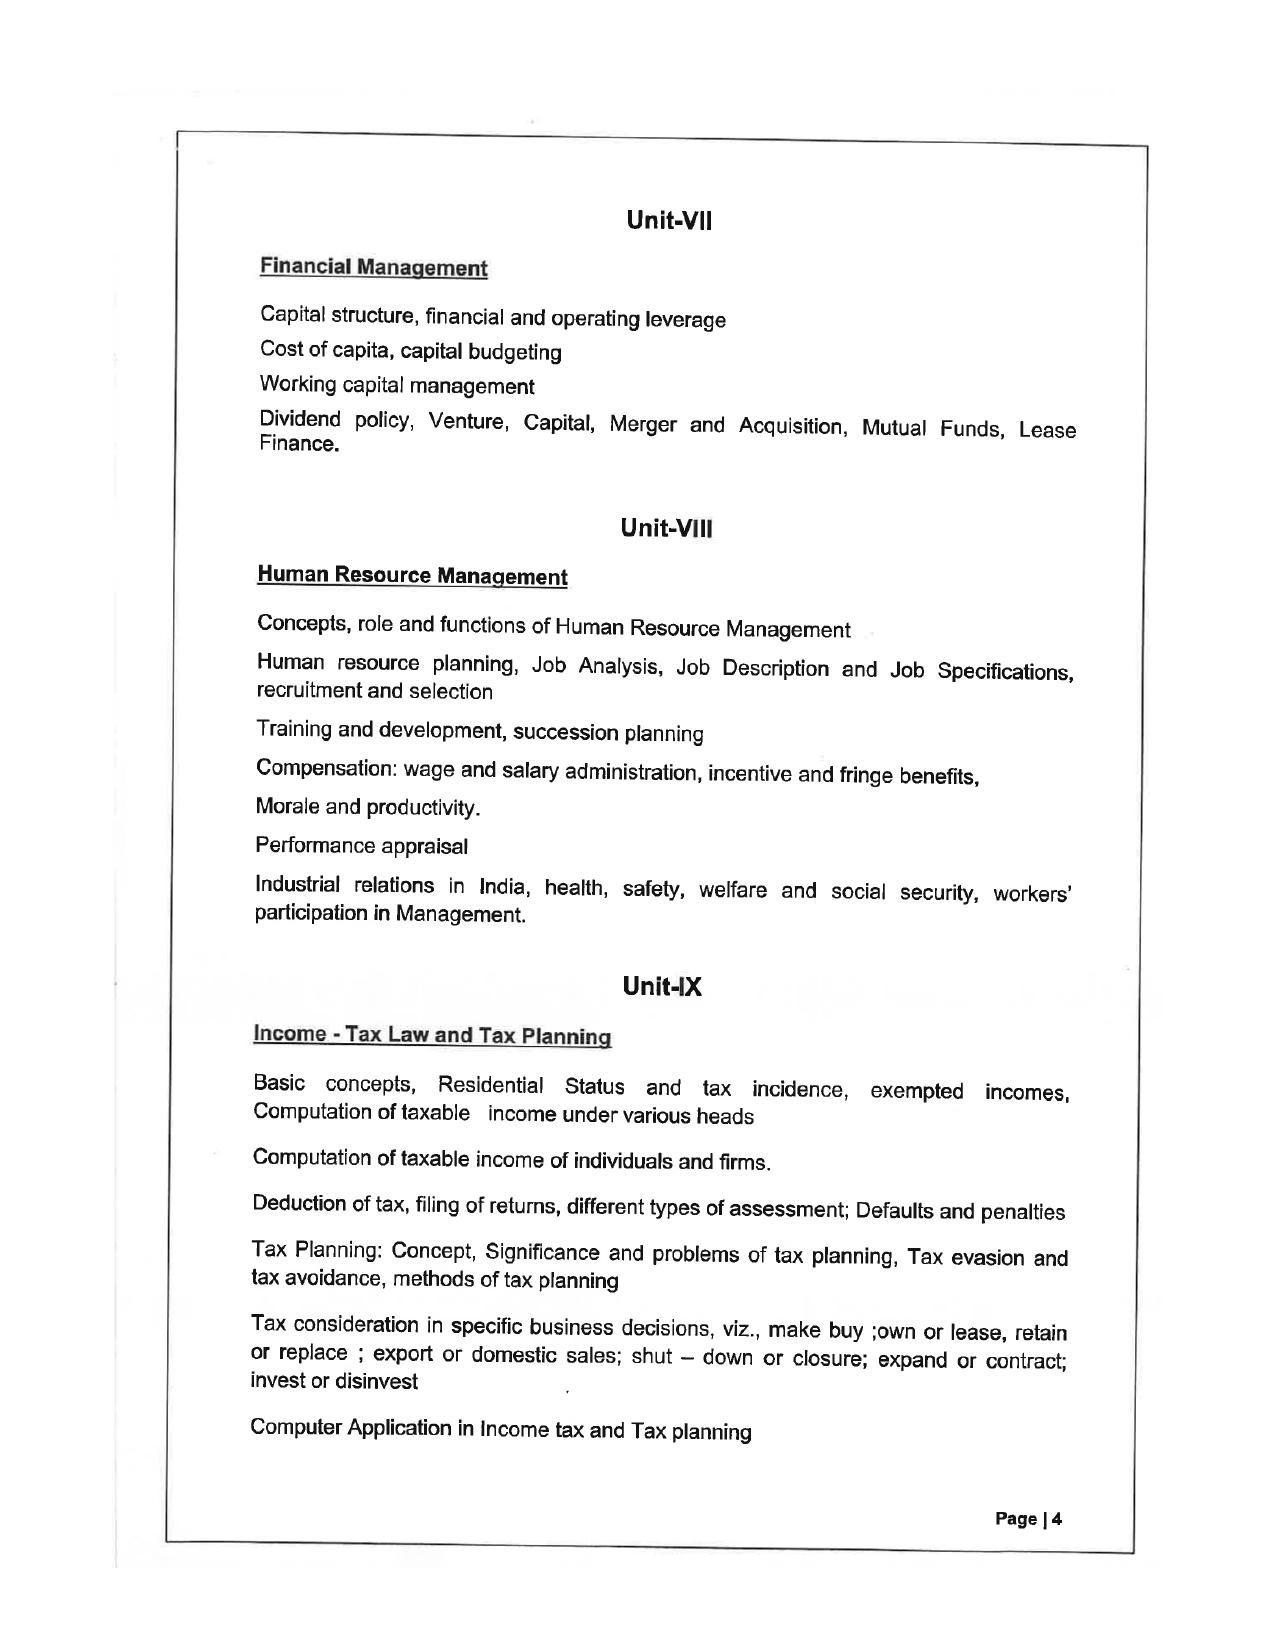 JMI Entrance Exam FACULTY OF SOCIAL SCIENCES Syllabus - Page 9